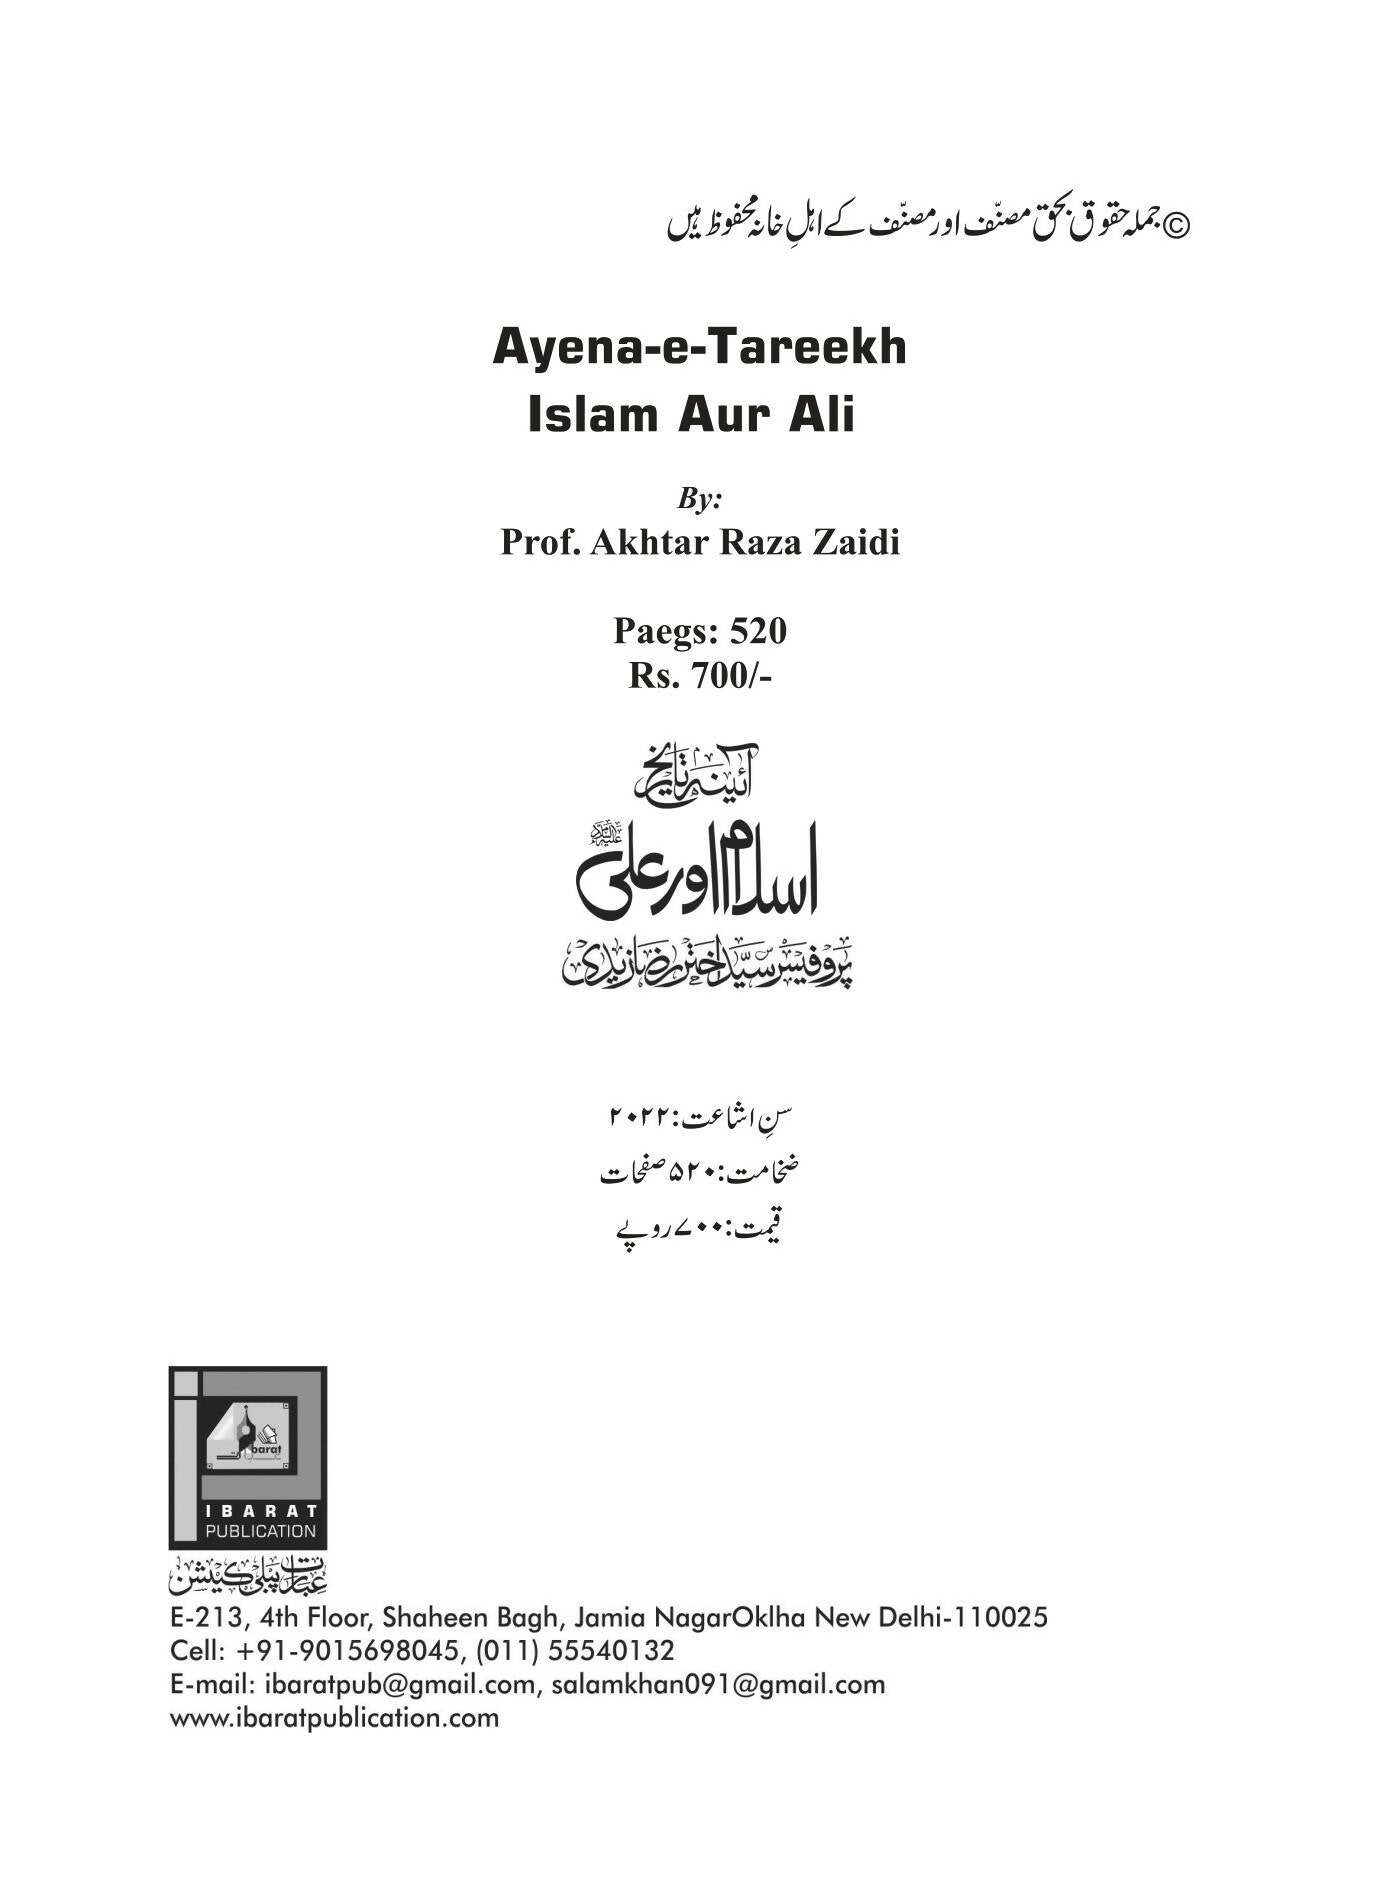 Ayena-e-Tareekh Islam Aur Ali